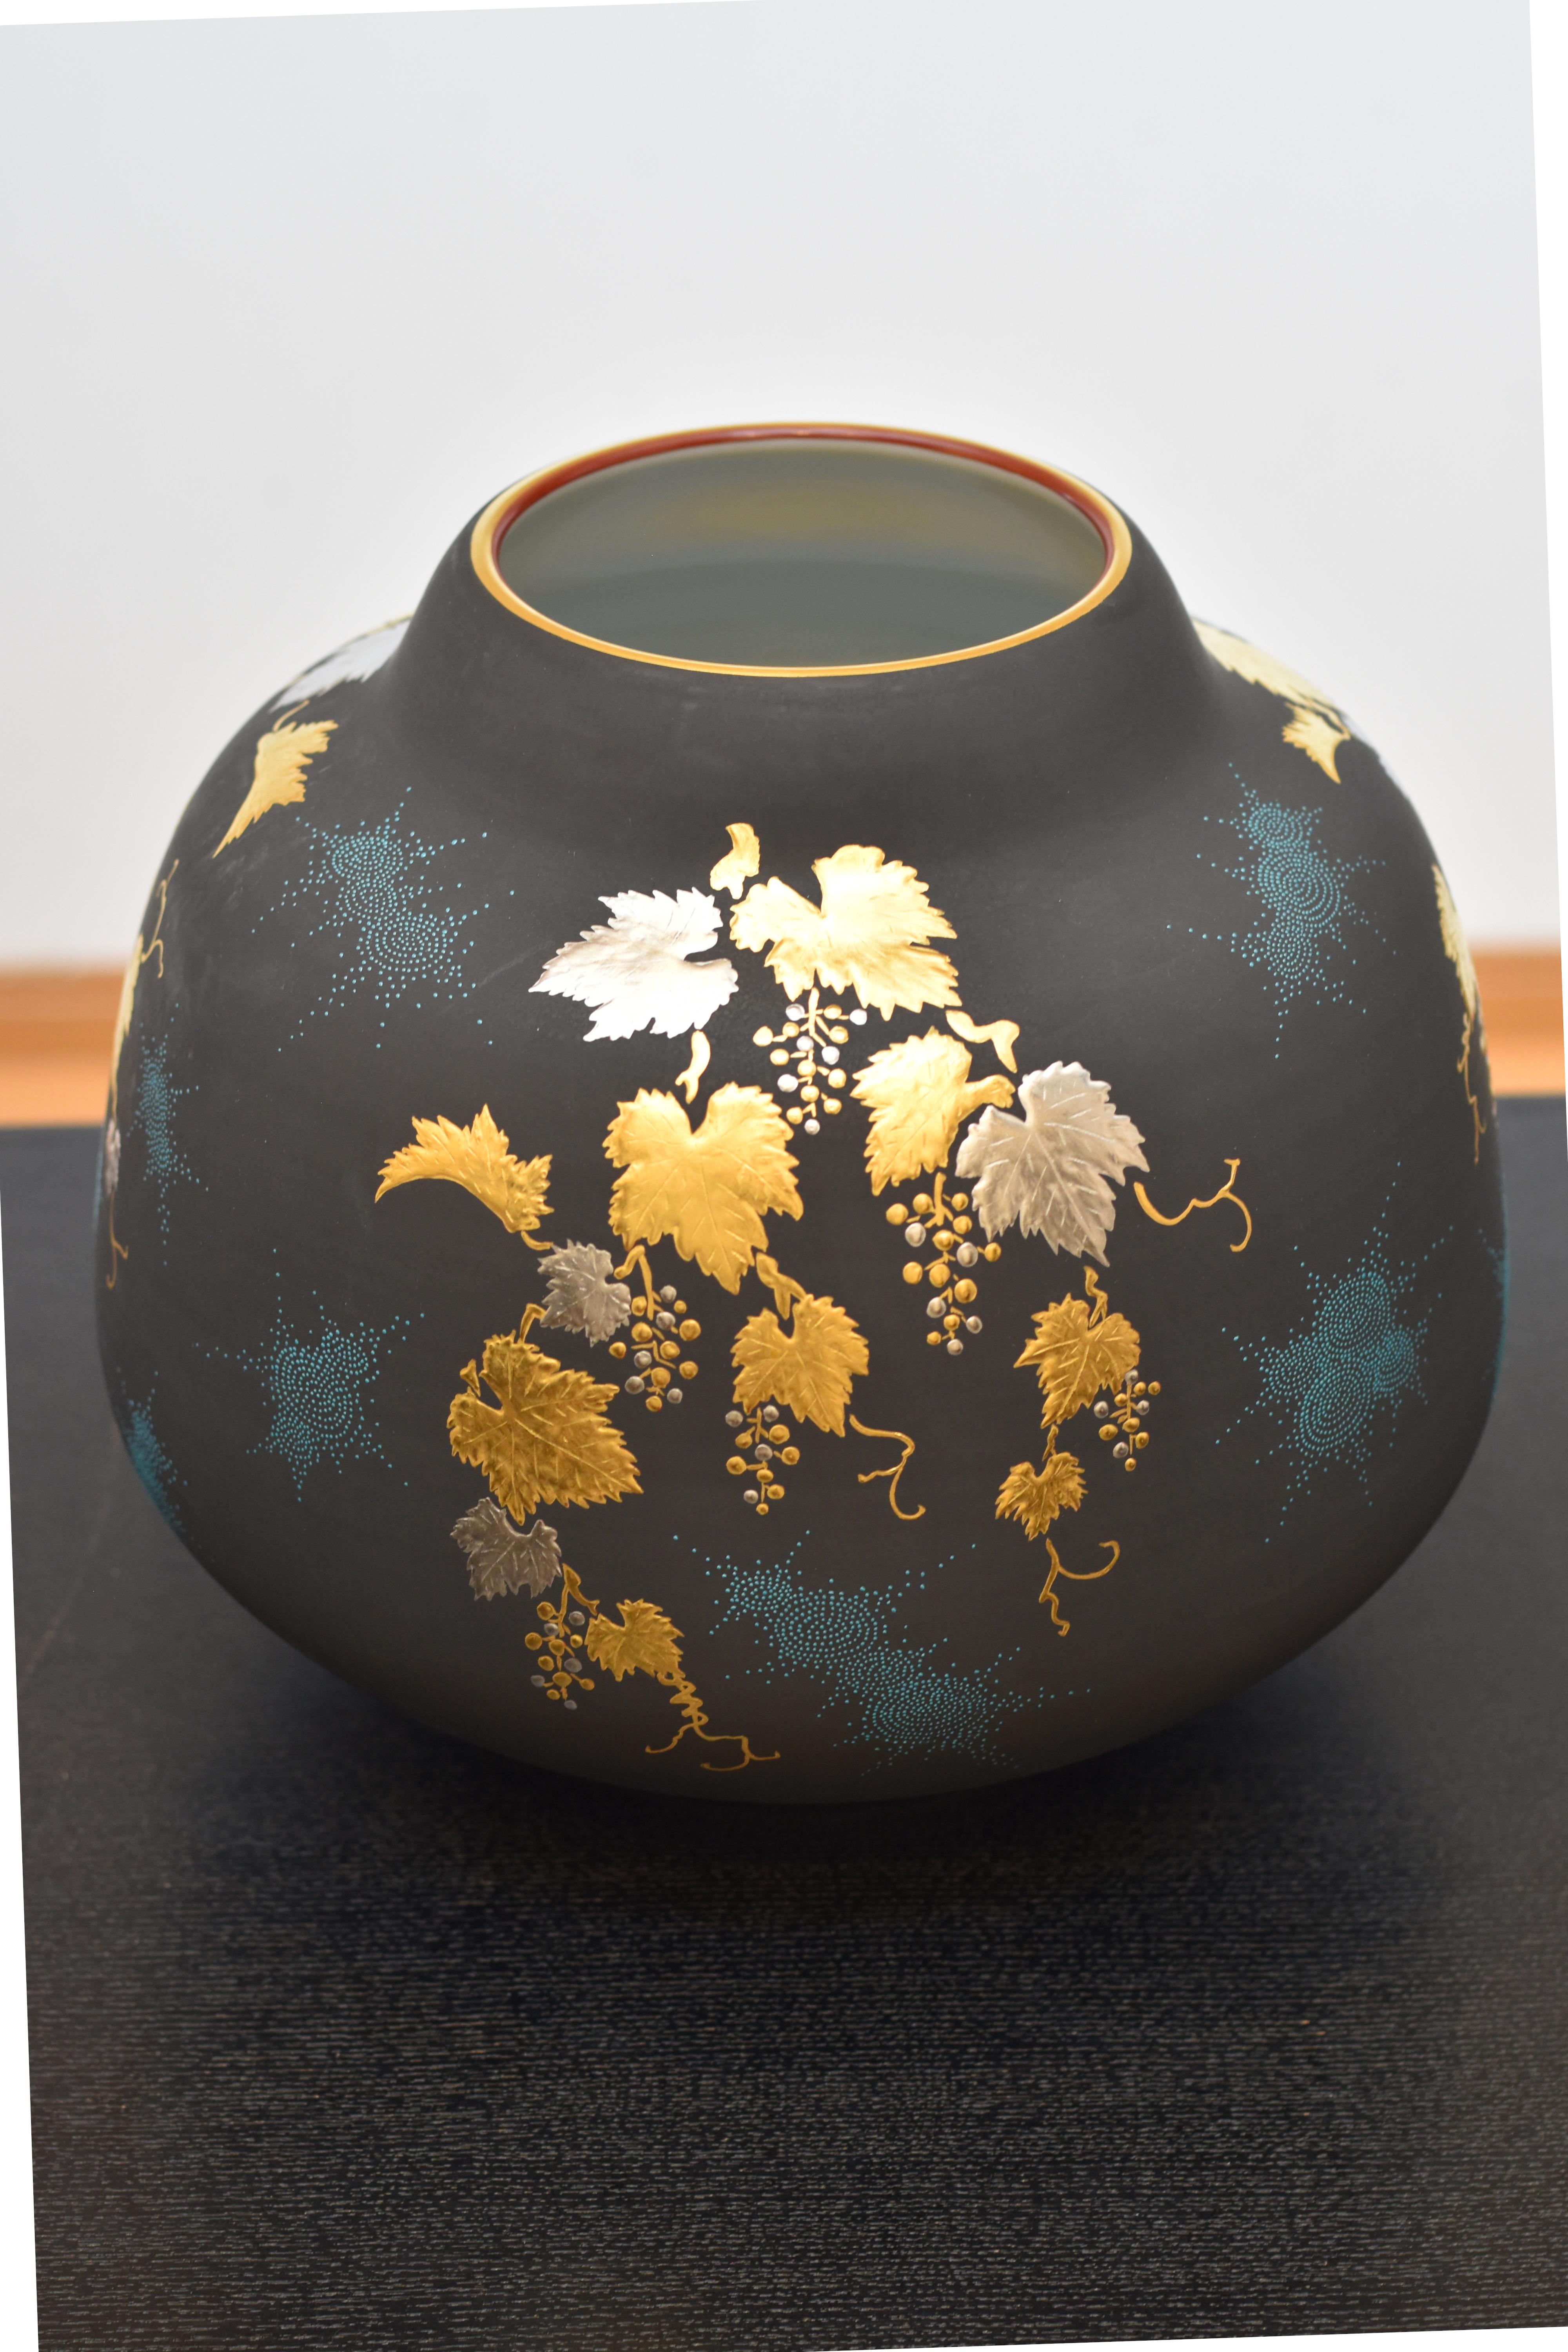 Meiji Japanese Contemporary Blue Black Gold Platinum Porcelain Vase by Master Artist For Sale